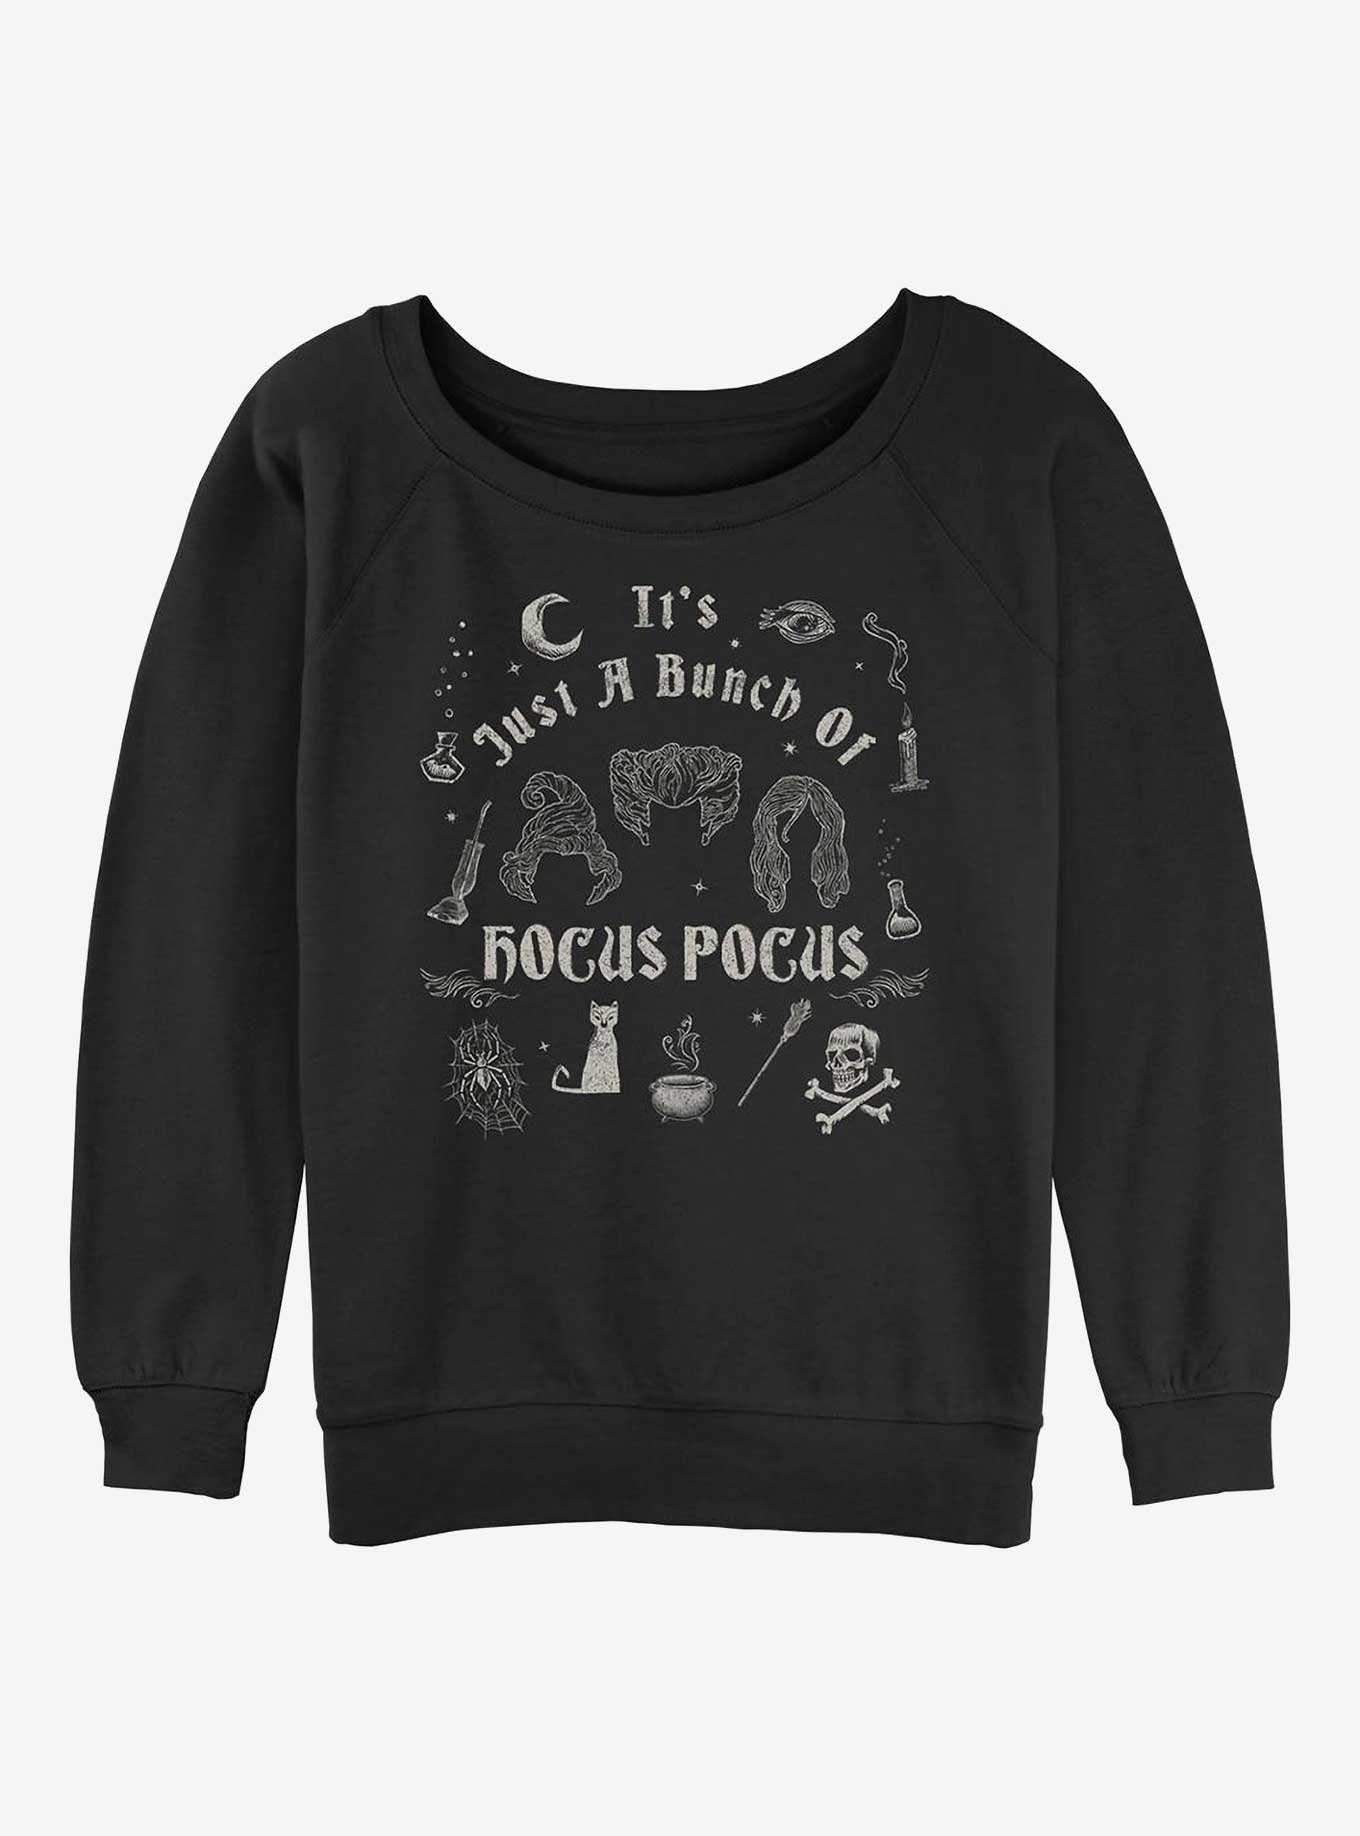 OFFICIAL Hocus Pocus Shirts & Merchandise